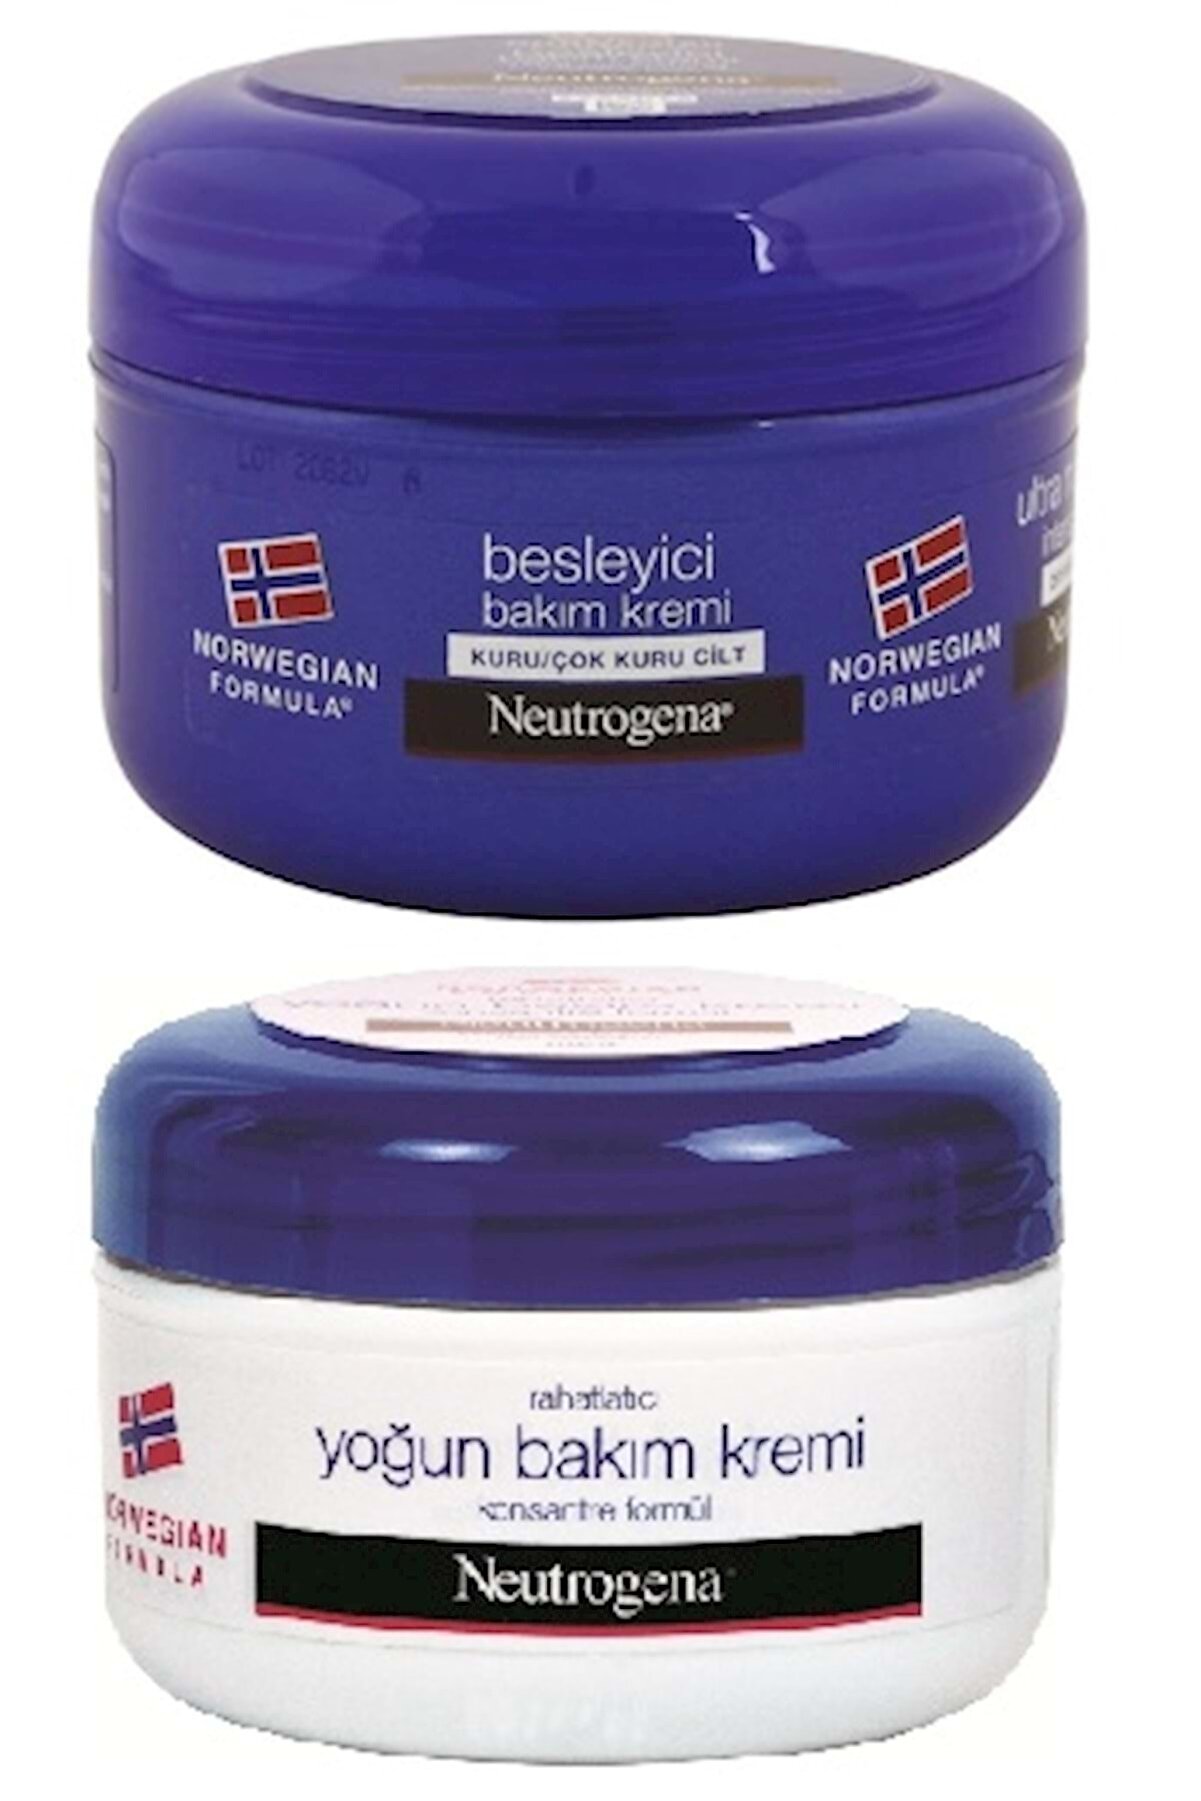 Neutrogena Norveç Formülü Bakım Kremi (karma 2 Li Set Besleyici  Ve Yoğun) 200 ml